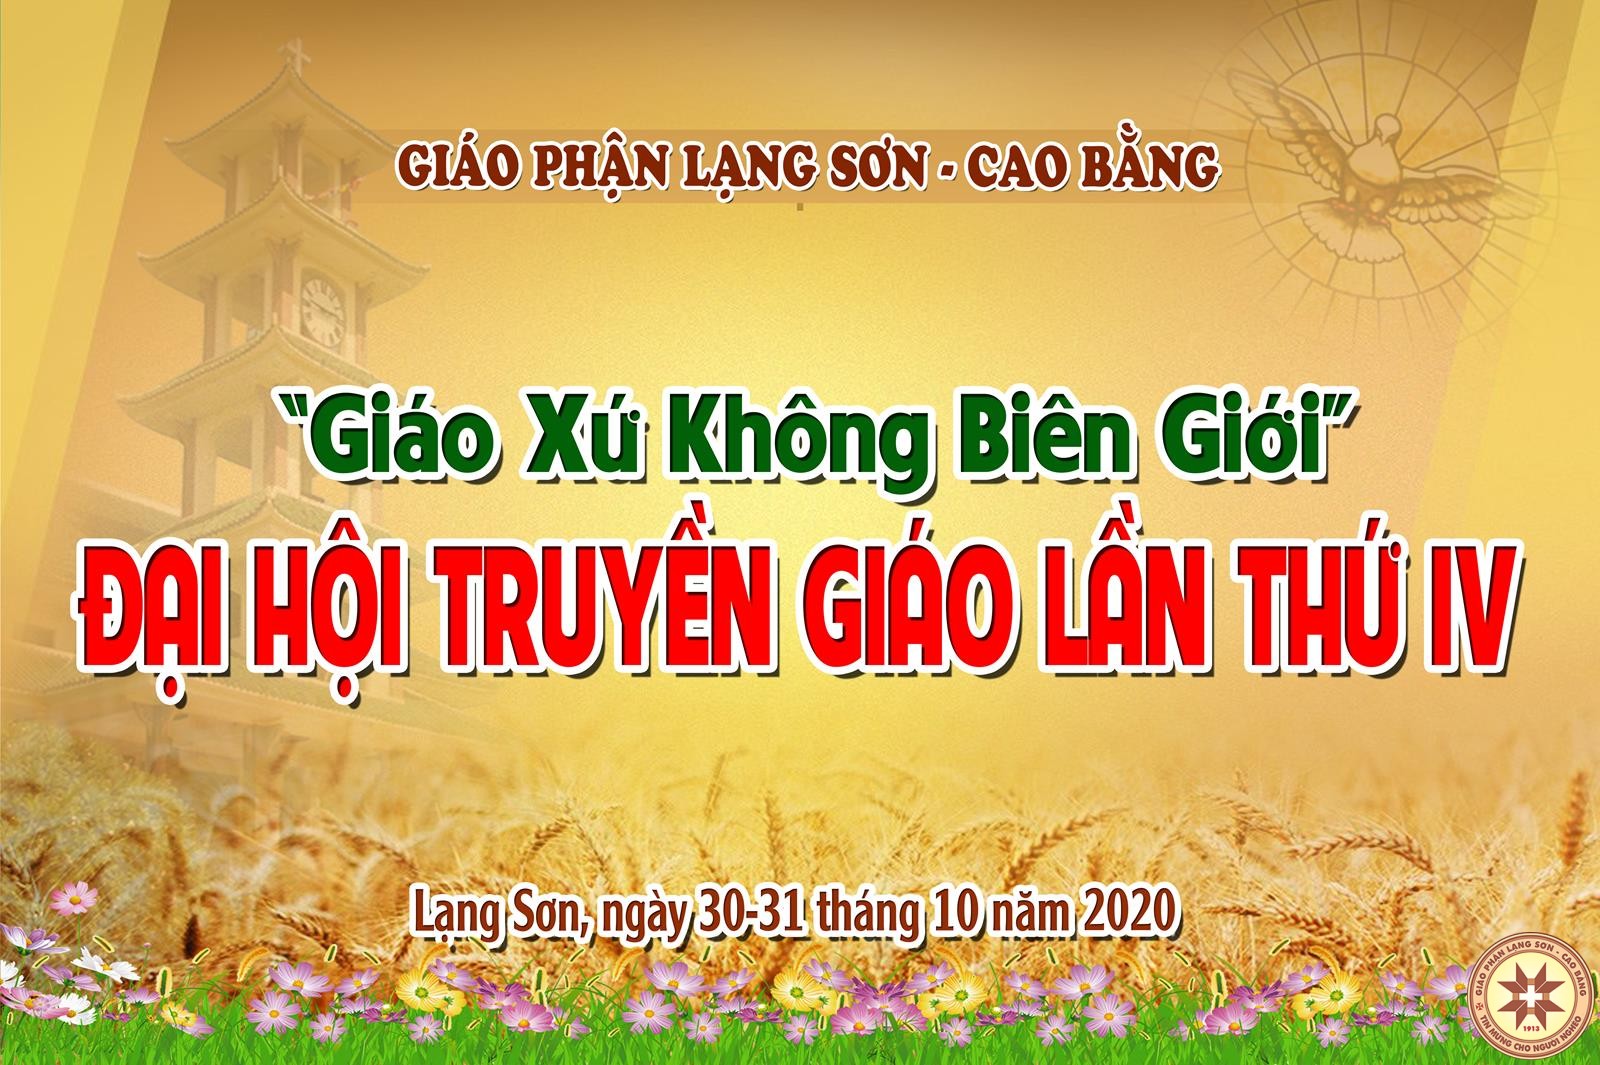 Khai mạc Đại hội Truyền Giáo lần thứ IV Giáo phận Lạng Sơn Cao Bằng